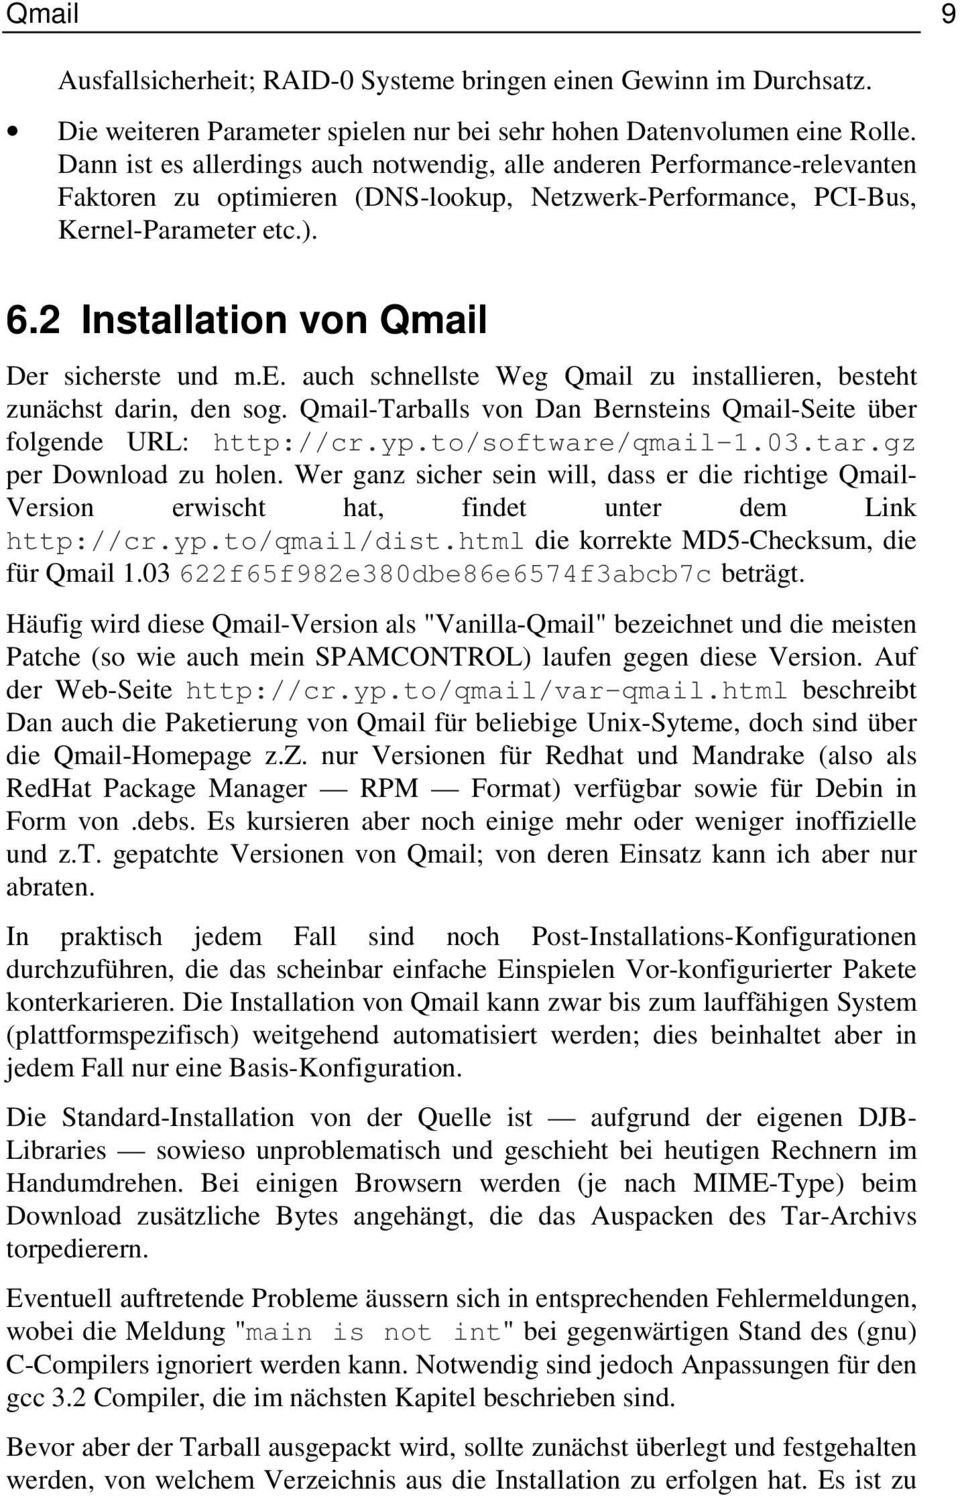 2 Installation von Qmail Der sicherste und m.e. auch schnellste Weg Qmail zu installieren, besteht zunächst darin, den sog. Qmail-Tarballs von Dan Bernsteins Qmail-Seite über folgende URL: http://cr.